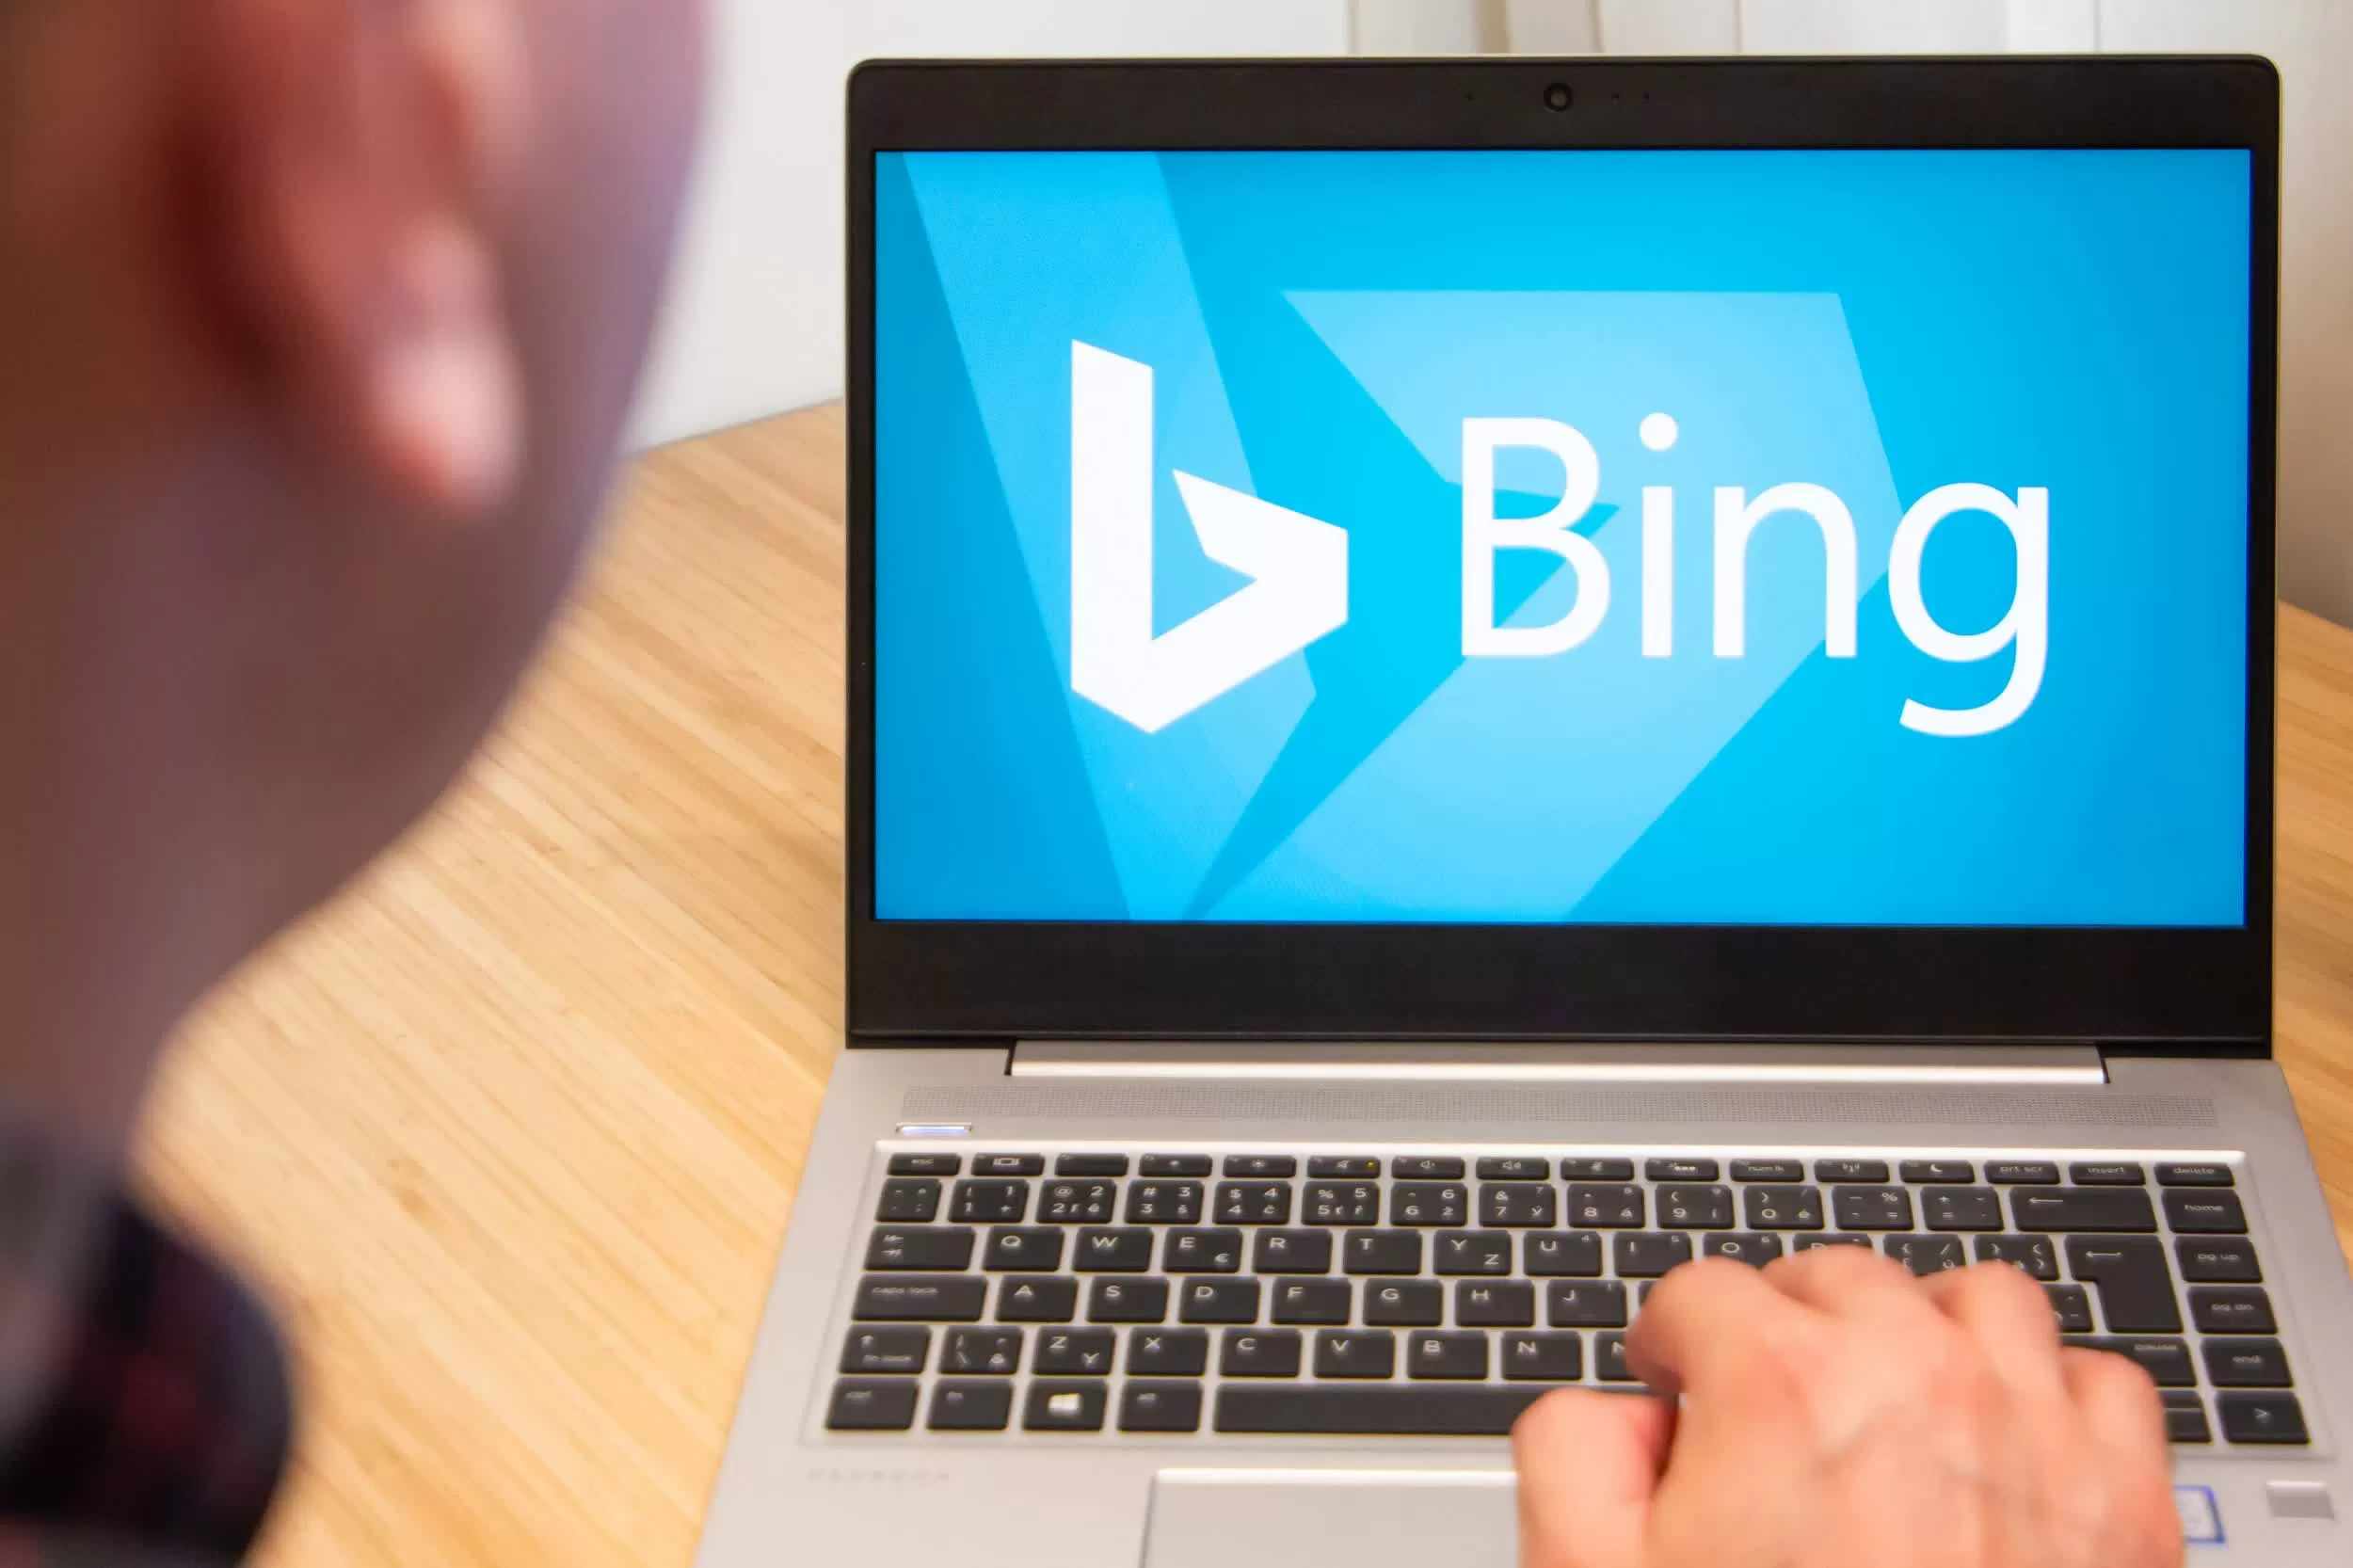 La insistente aplicación de Microsoft quiere que «repares» tu PC cambiándote a Bing